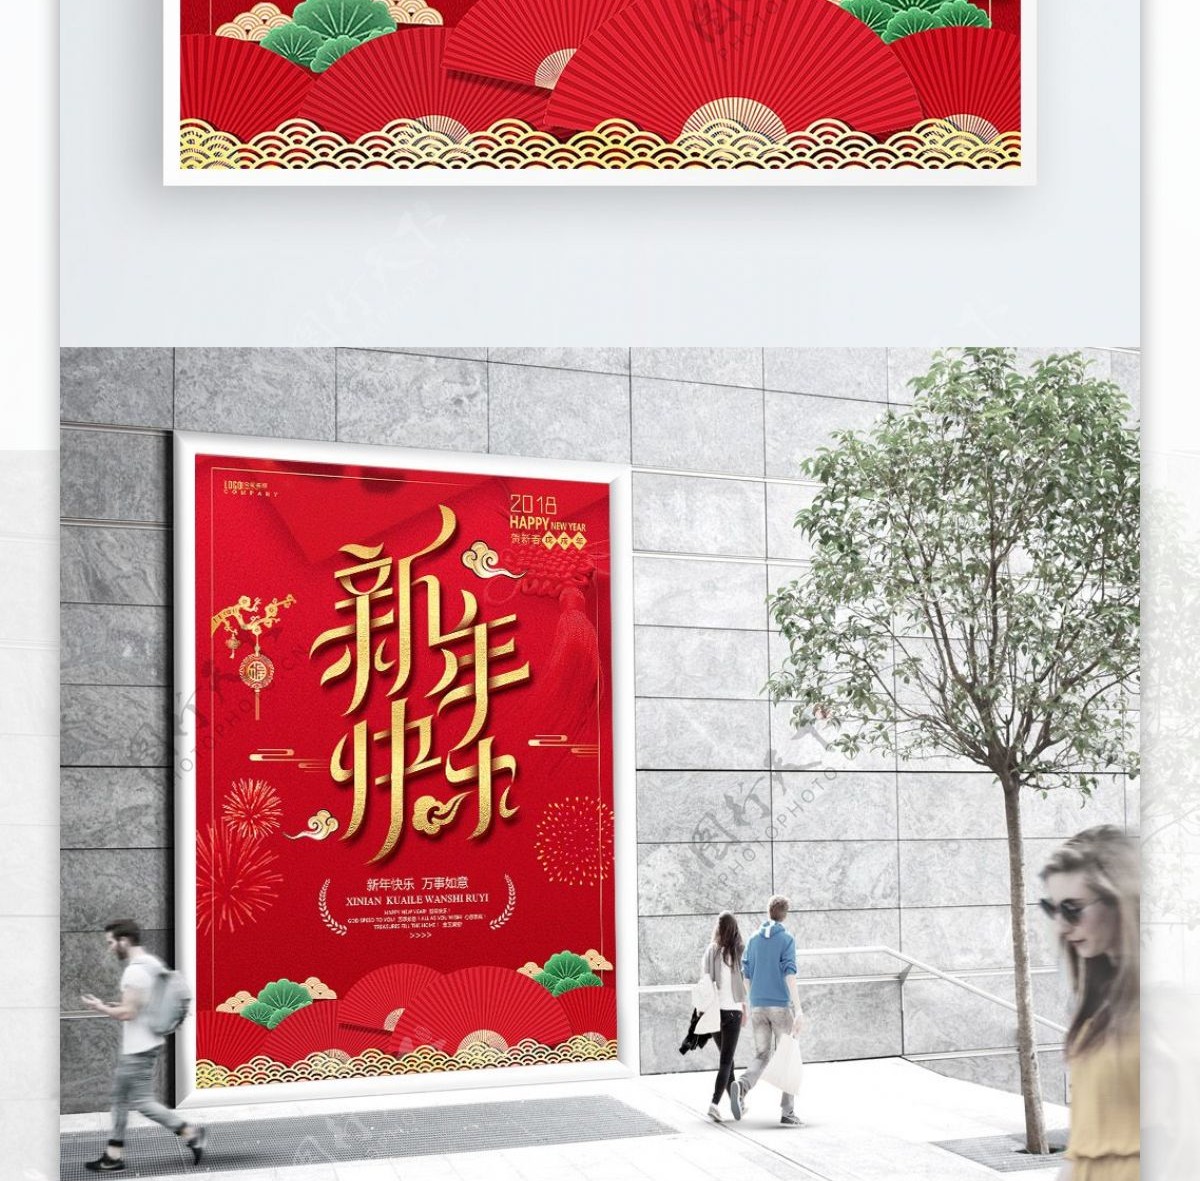 新年快乐红色大气传统节日海报PSD源文件